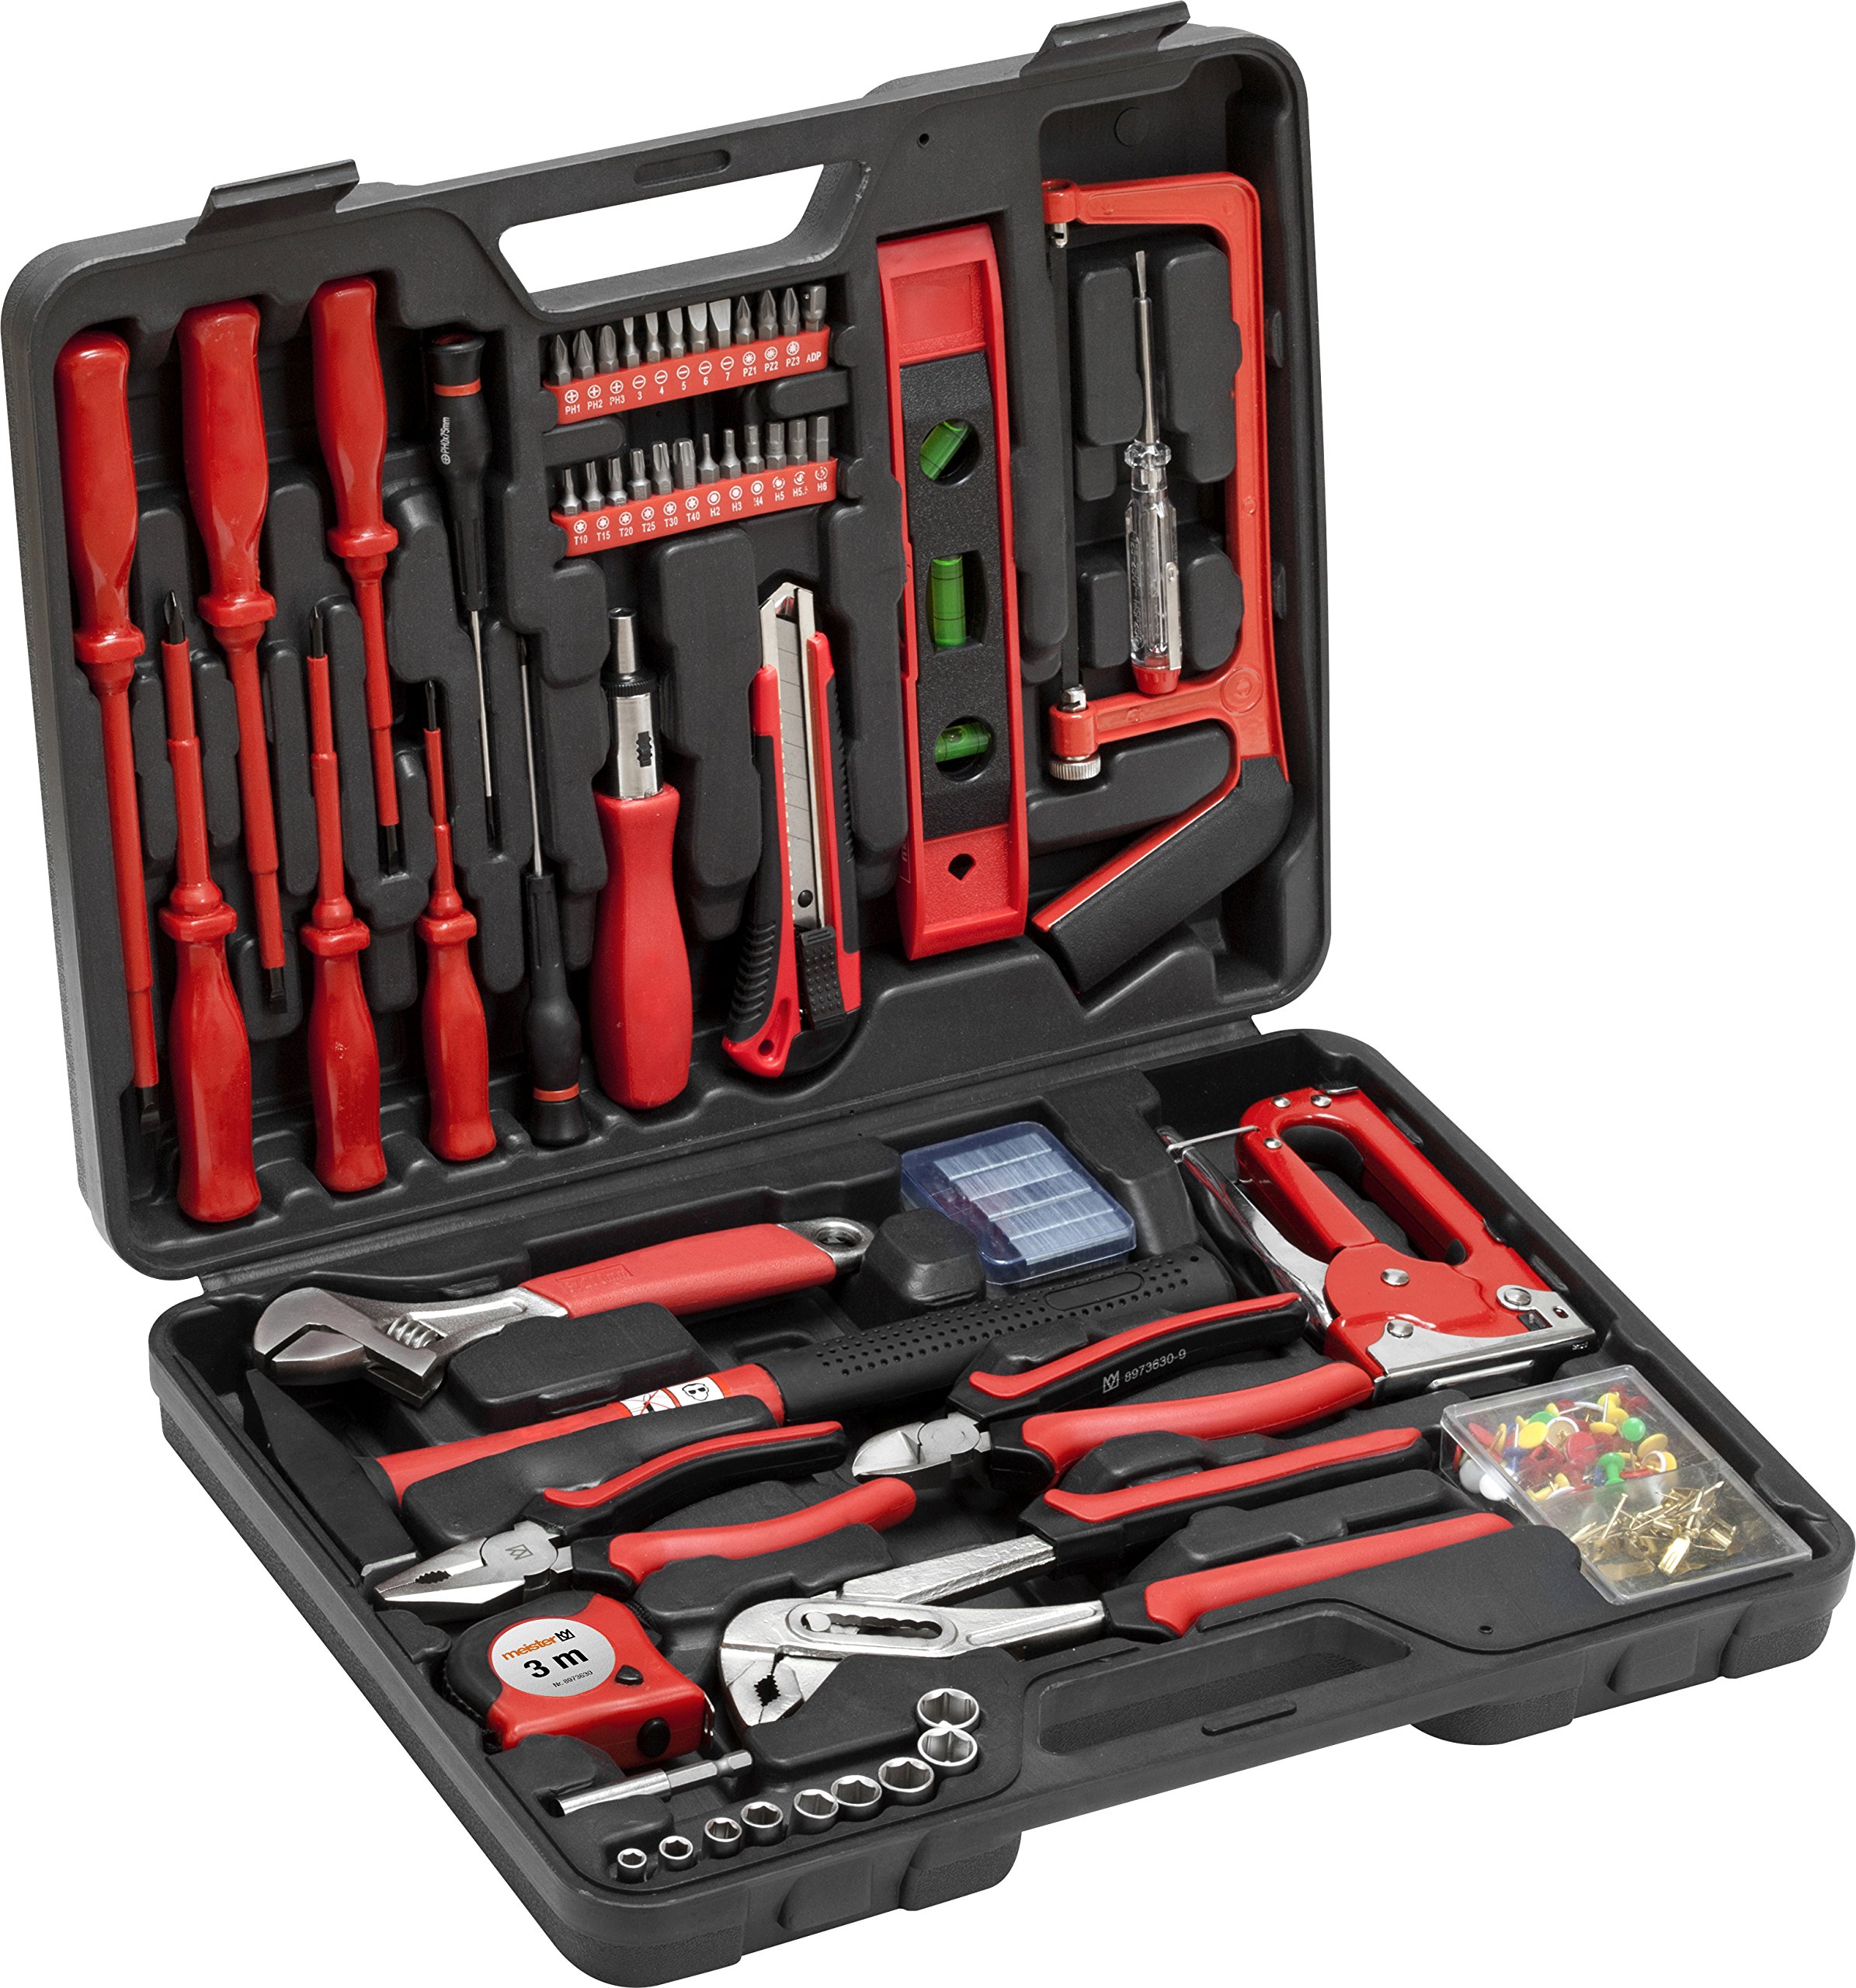 Meister Haushaltskoffer 60-teilig - Werkzeug-Set - Werkzeug für den täglichen Gebrauch / Werkzeugkoffer befüllt / Werkzeugset / Werkzeugbox komplett mit Werkzeug / Werkzeugsortiment / 8973630